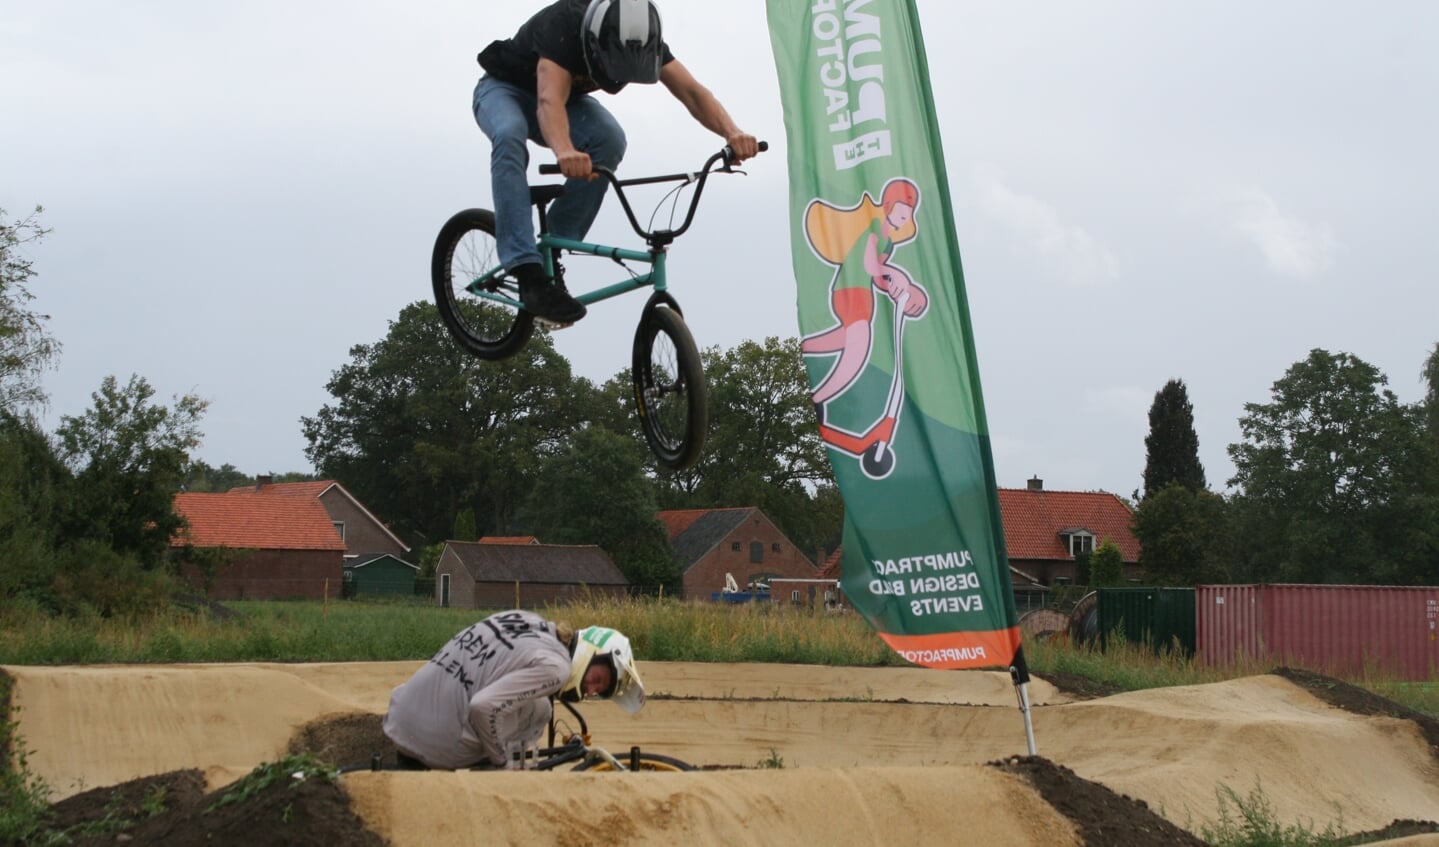 Professionele fietscrosser geeft demonstratie op nieuwe pumptrackbaan in Lievelde. Foto: Jos Betting 